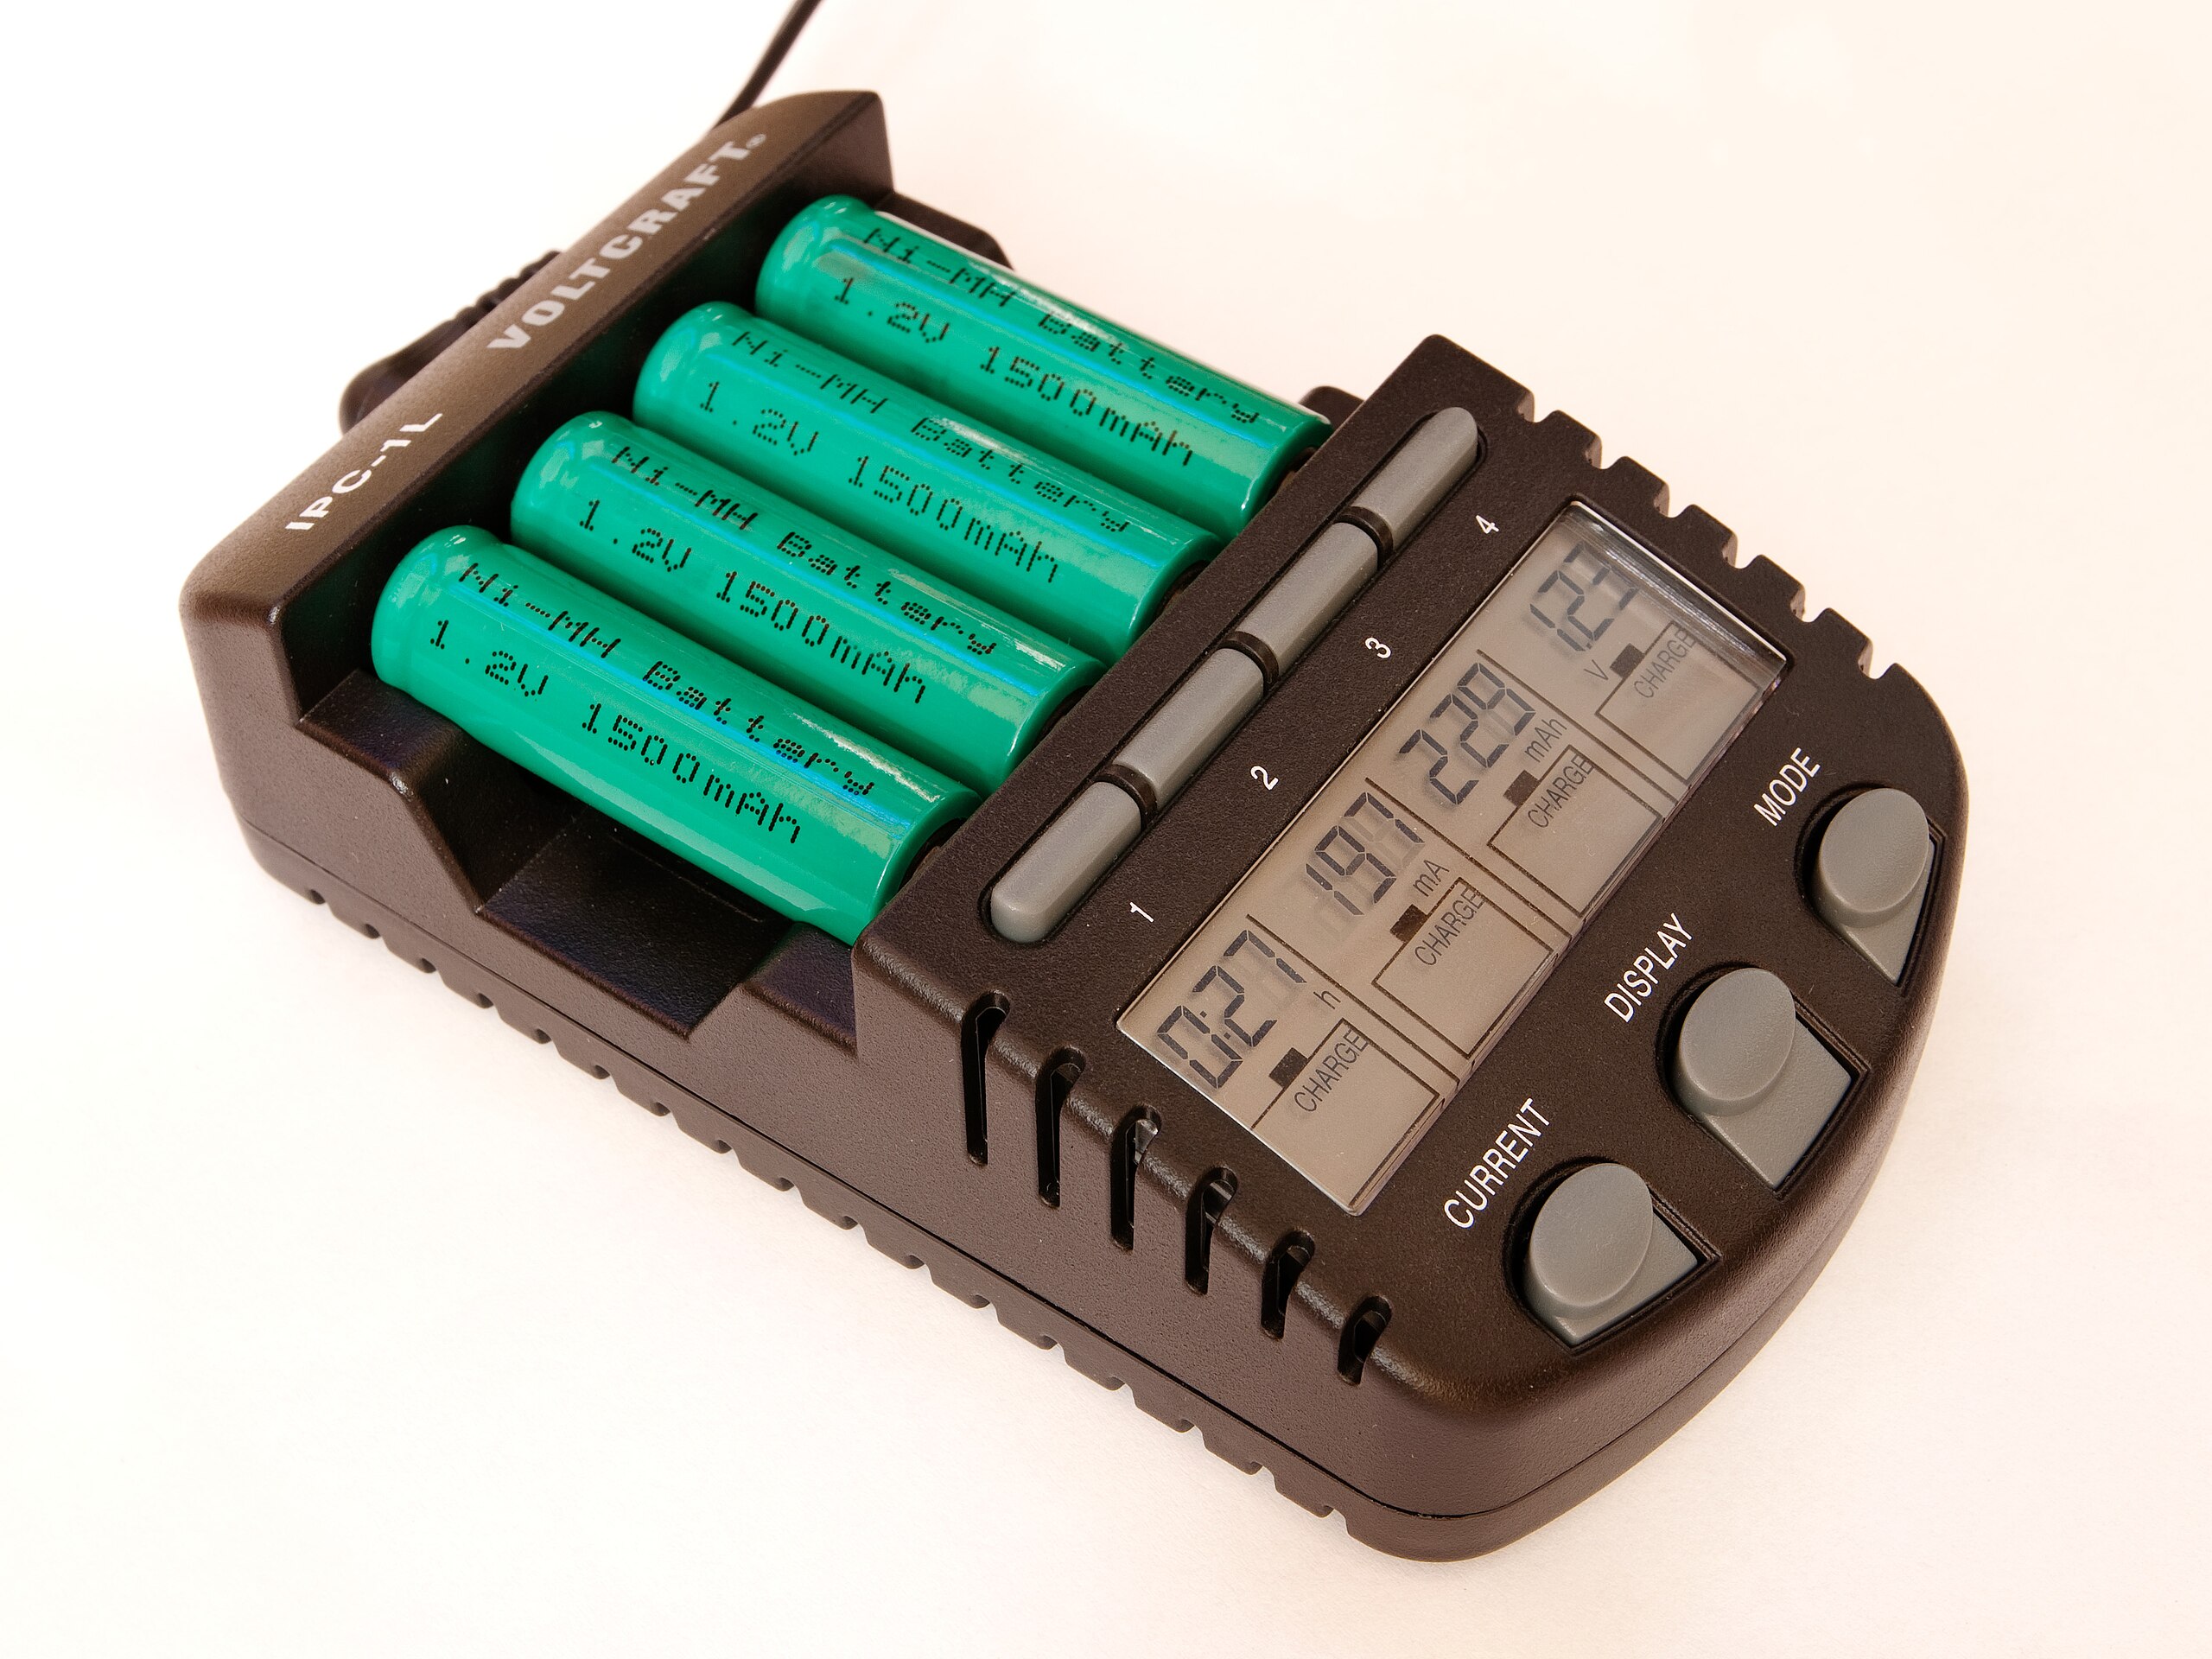 Mignon (Batterie) – Wikipedia